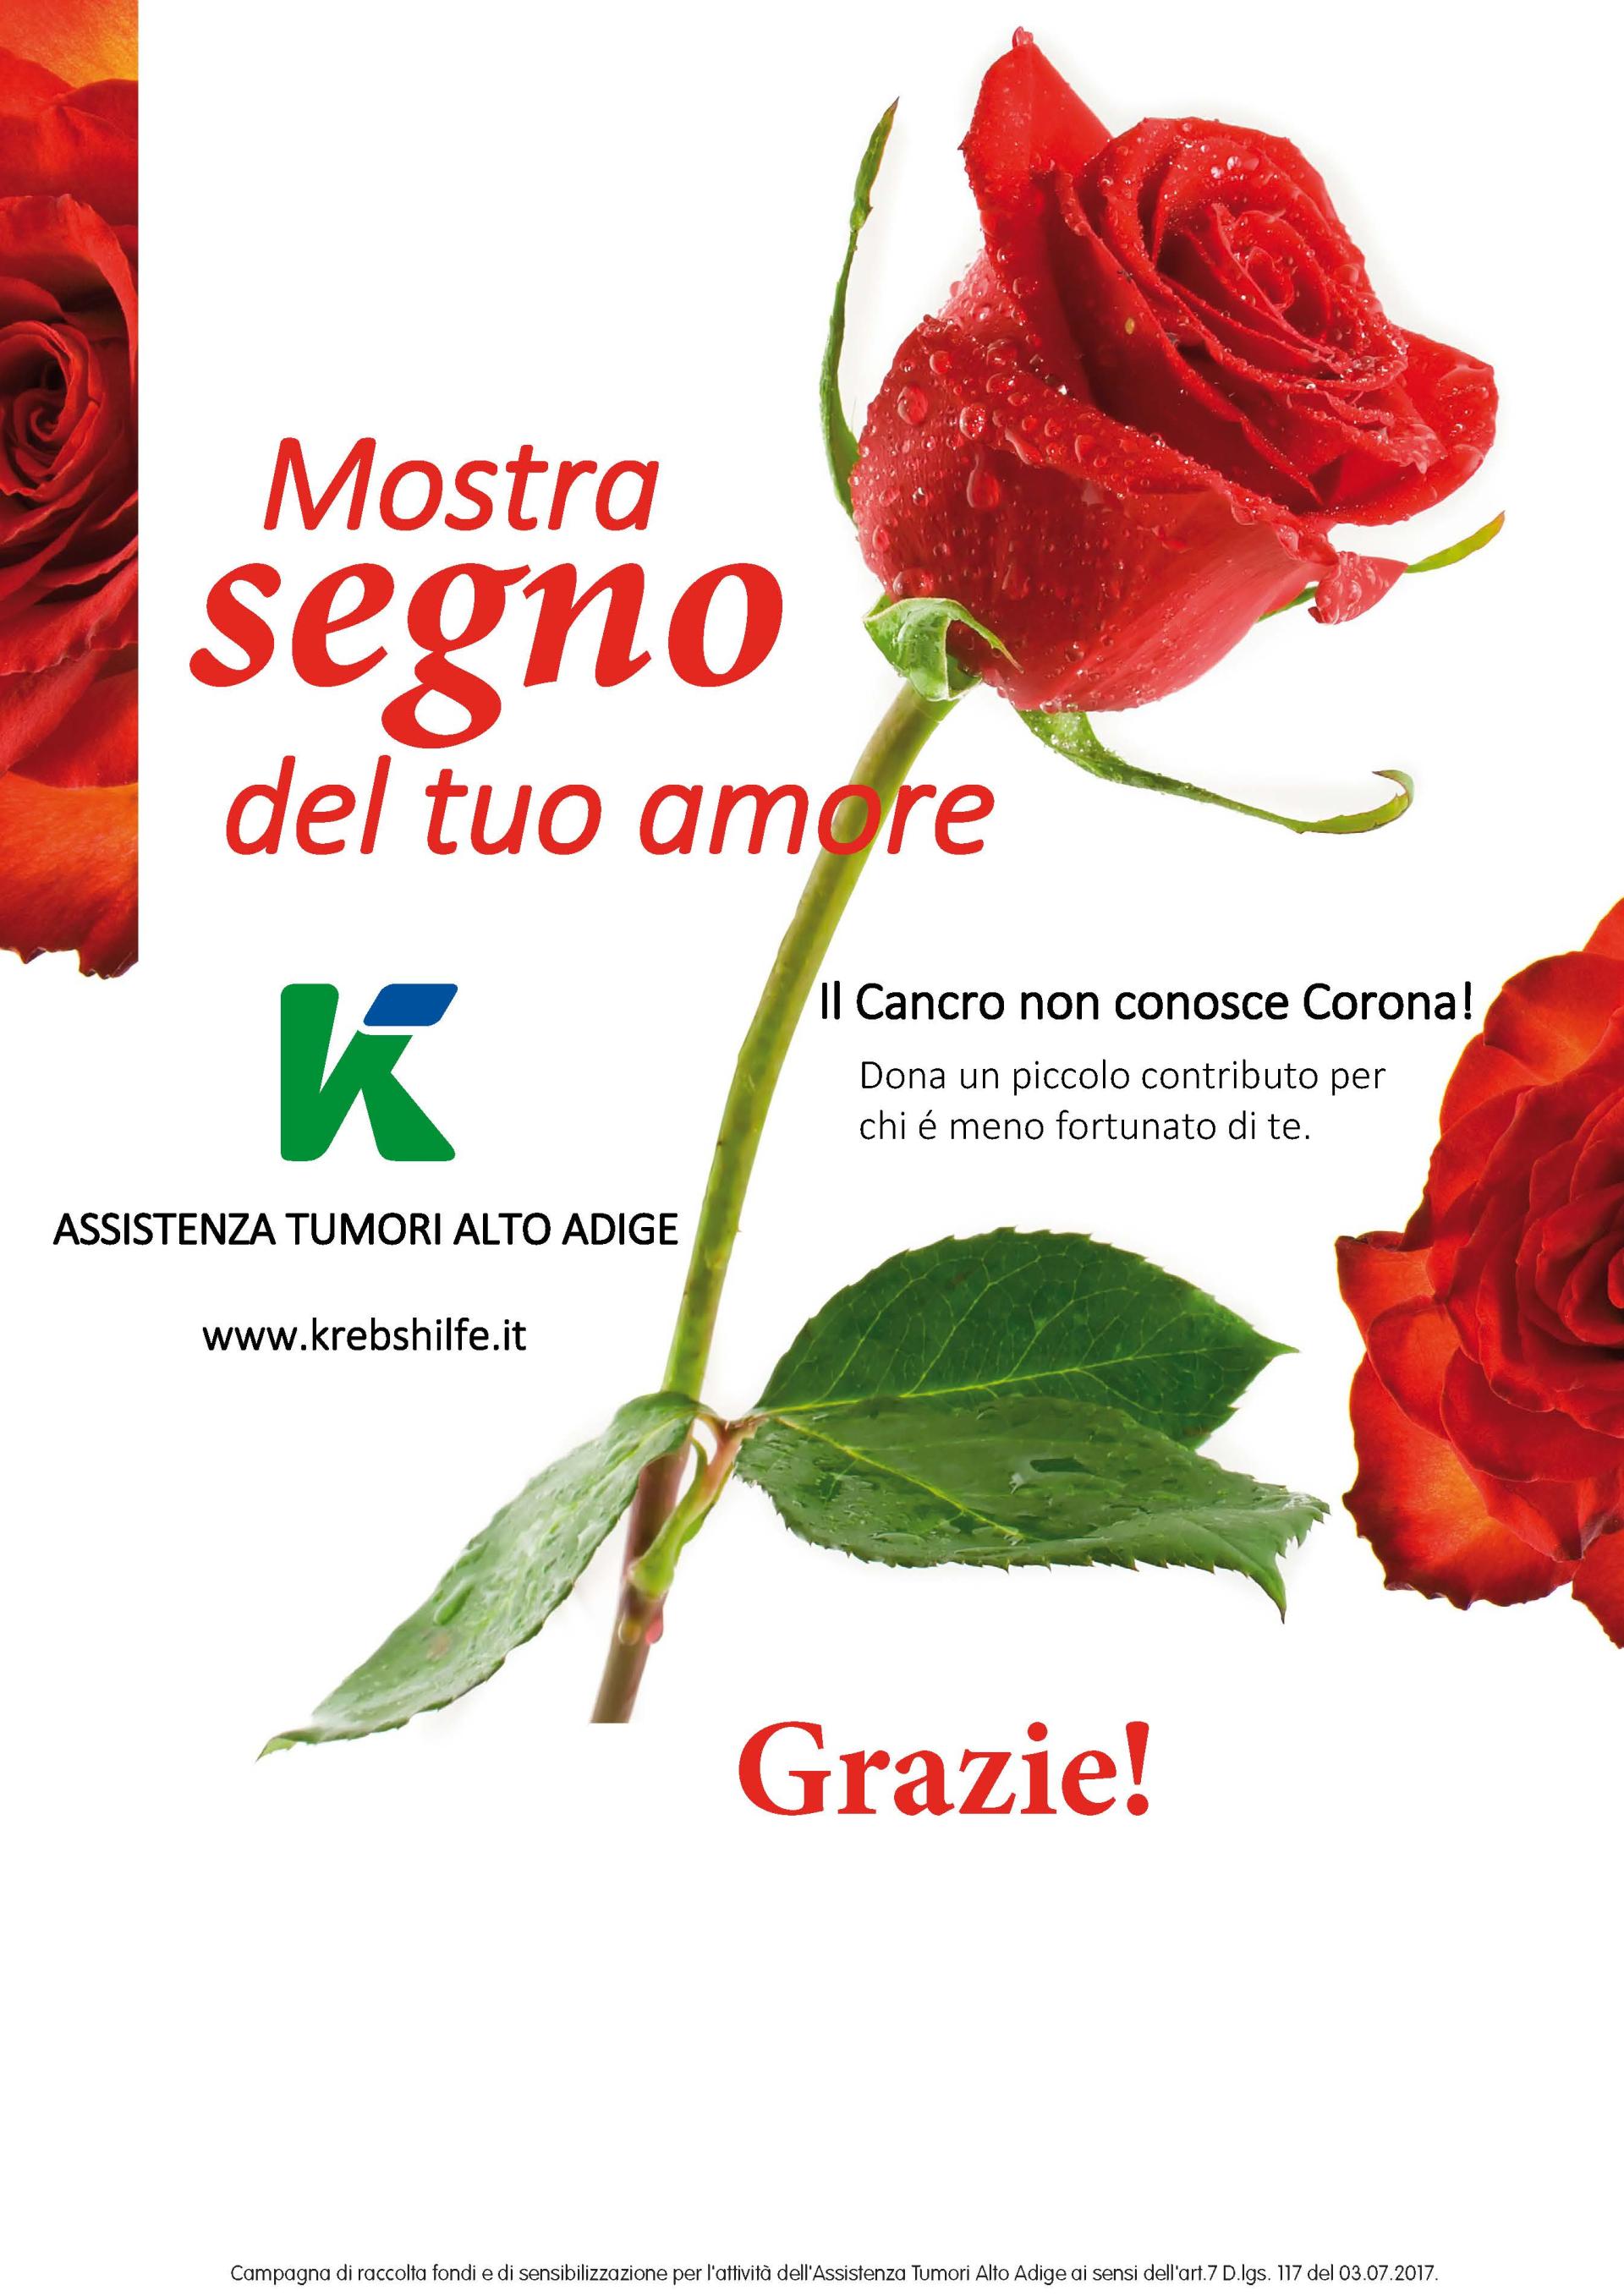 Nastro rosa 2019, anche Treviglio aderisce all'iniziativa per le donne -  Prima Treviglio